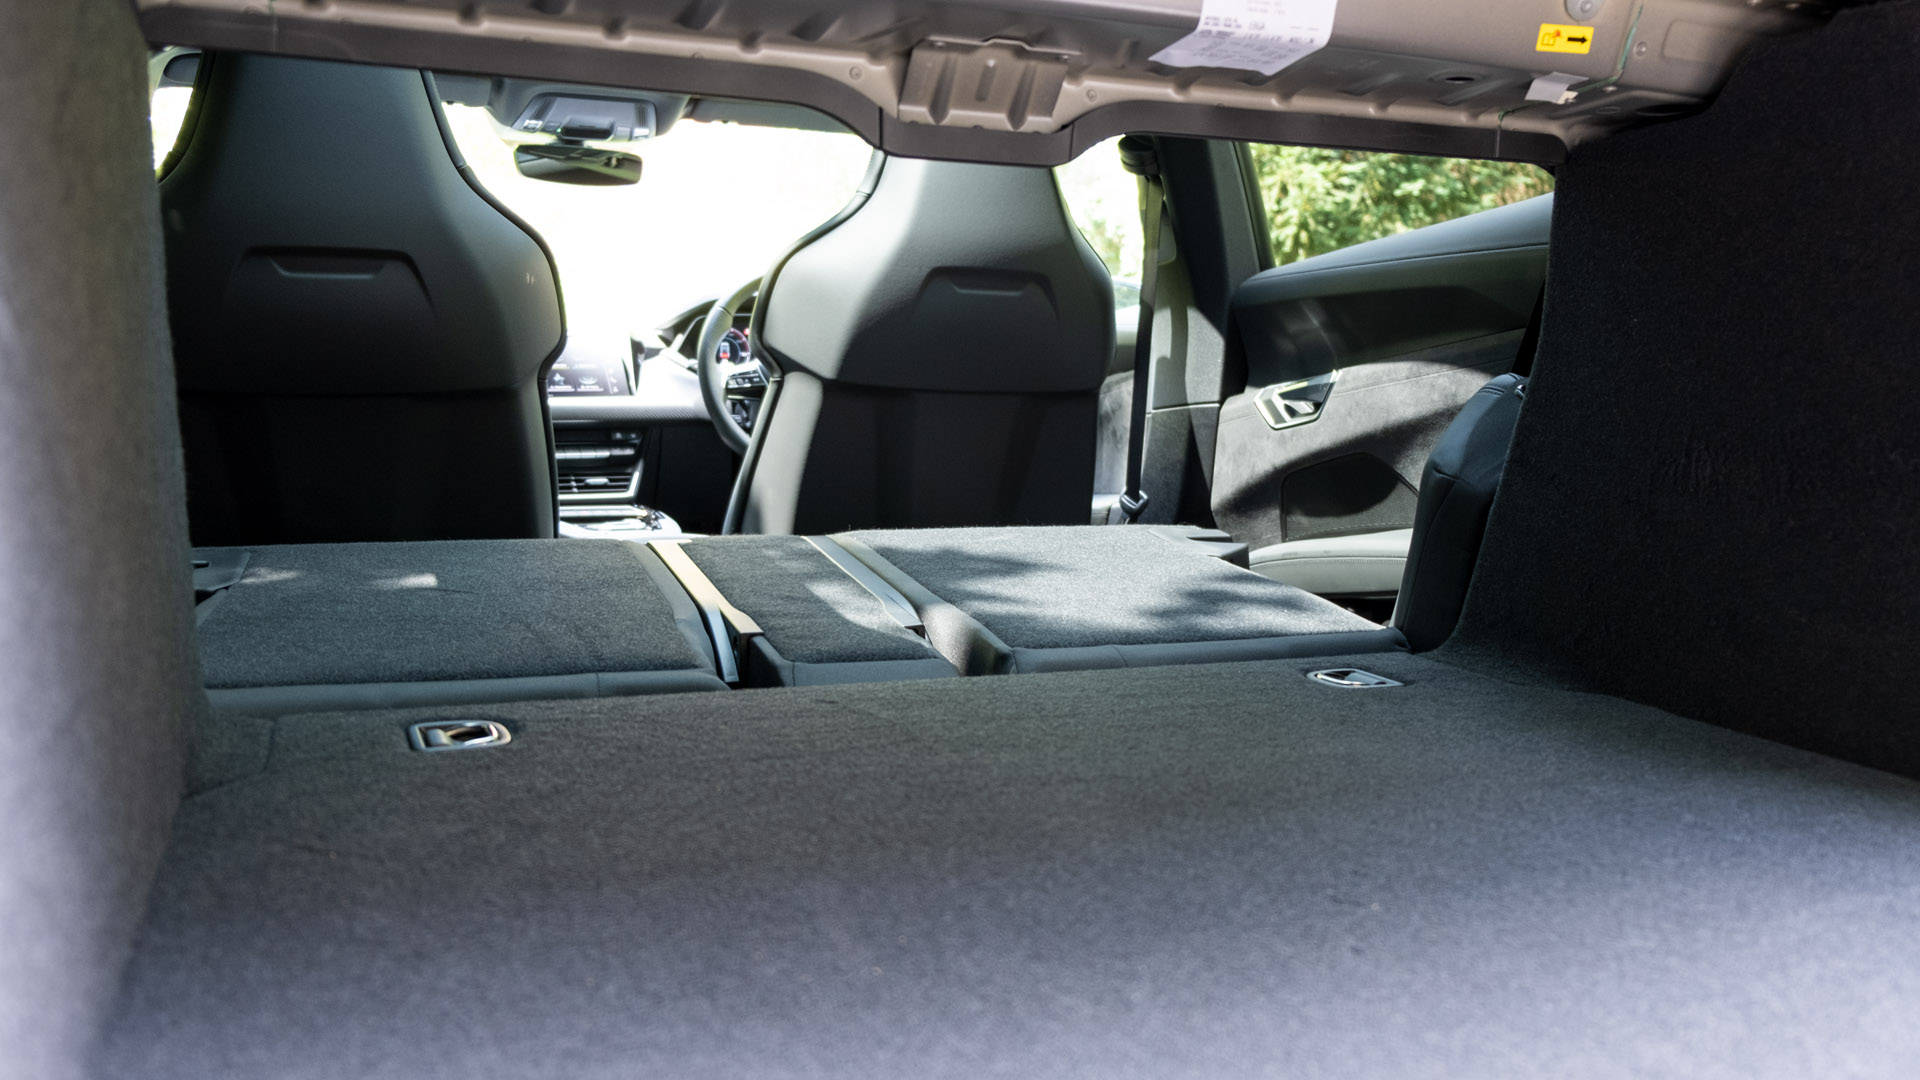 Audi e-tron GT seats down